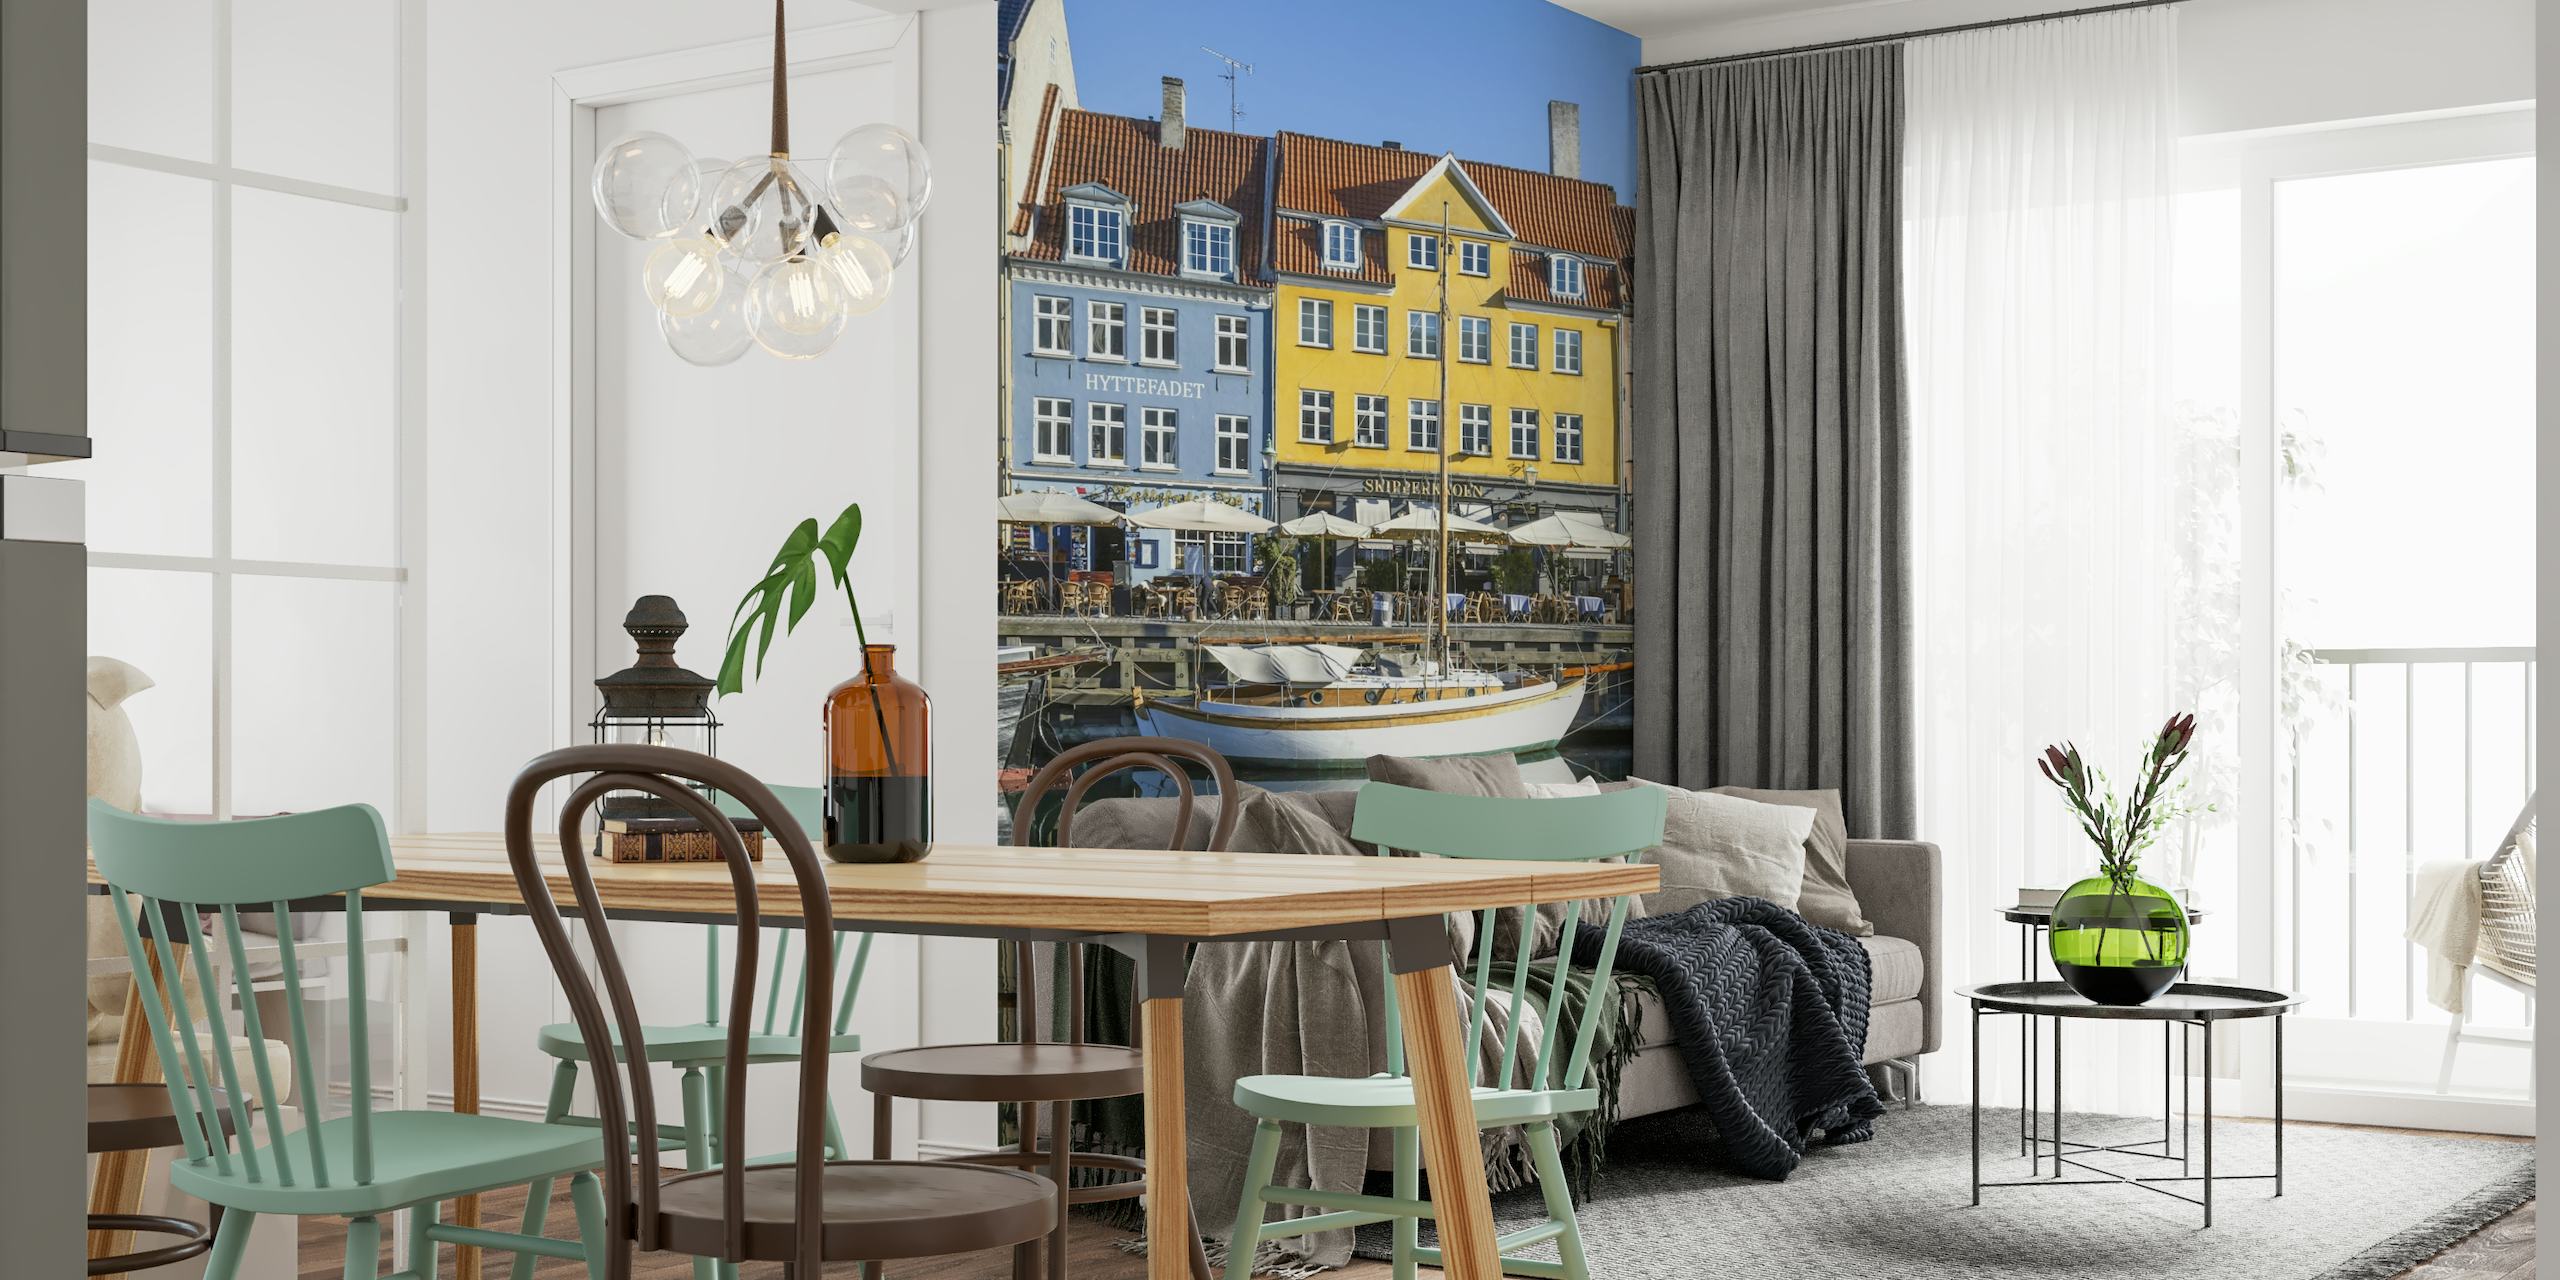 COPENHAGEN Quiet Nyhavn behang